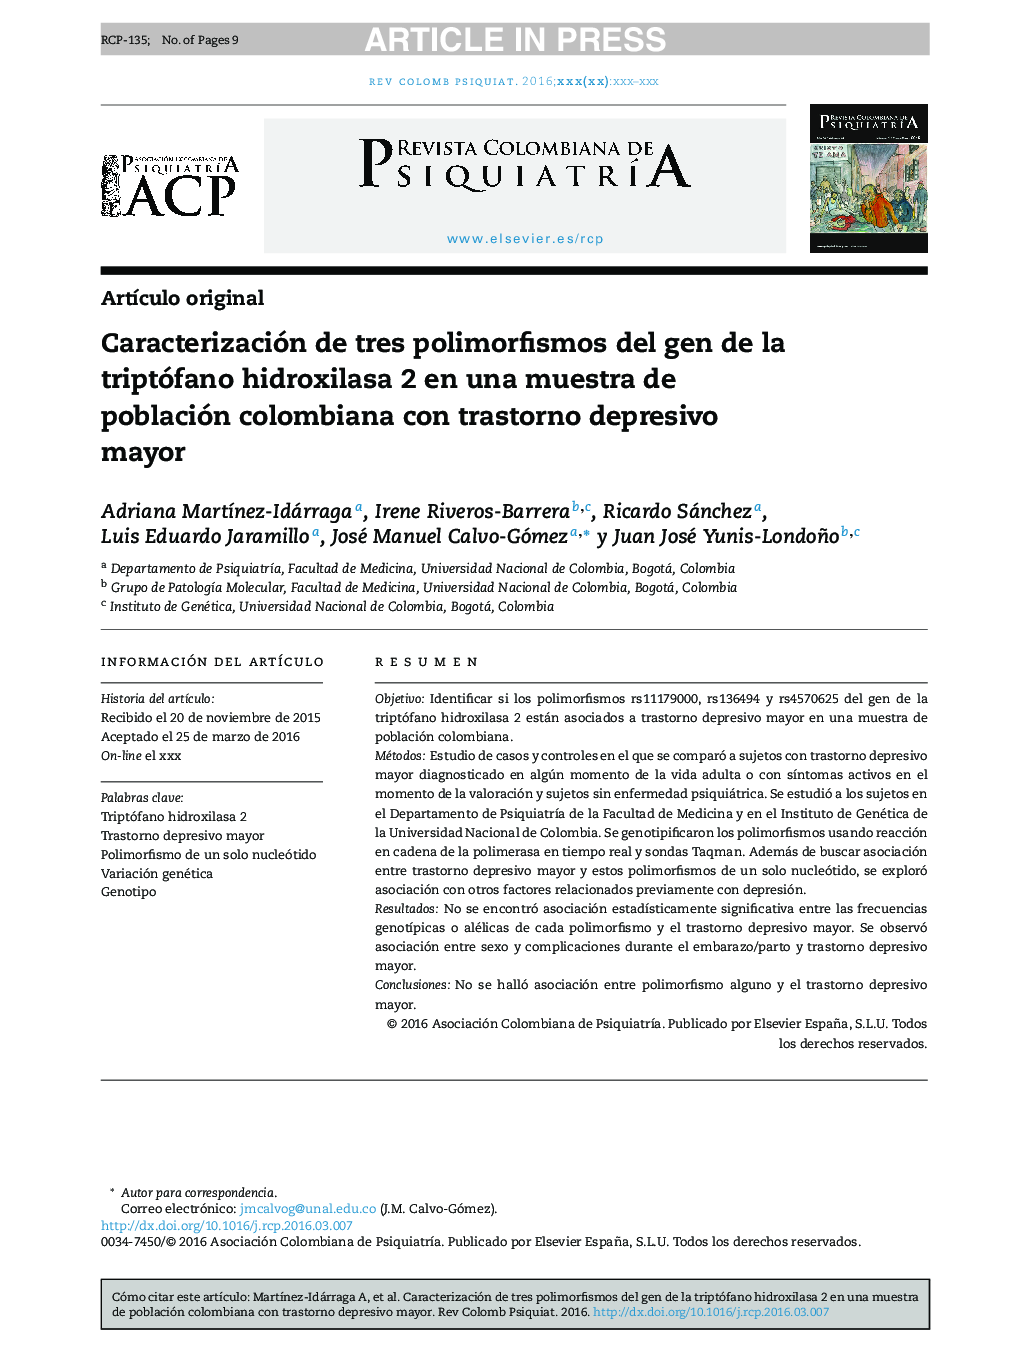 Caracterización de tres polimorfismos del gen de la triptófano hidroxilasa 2 en una muestra de población colombiana con trastorno depresivo mayor